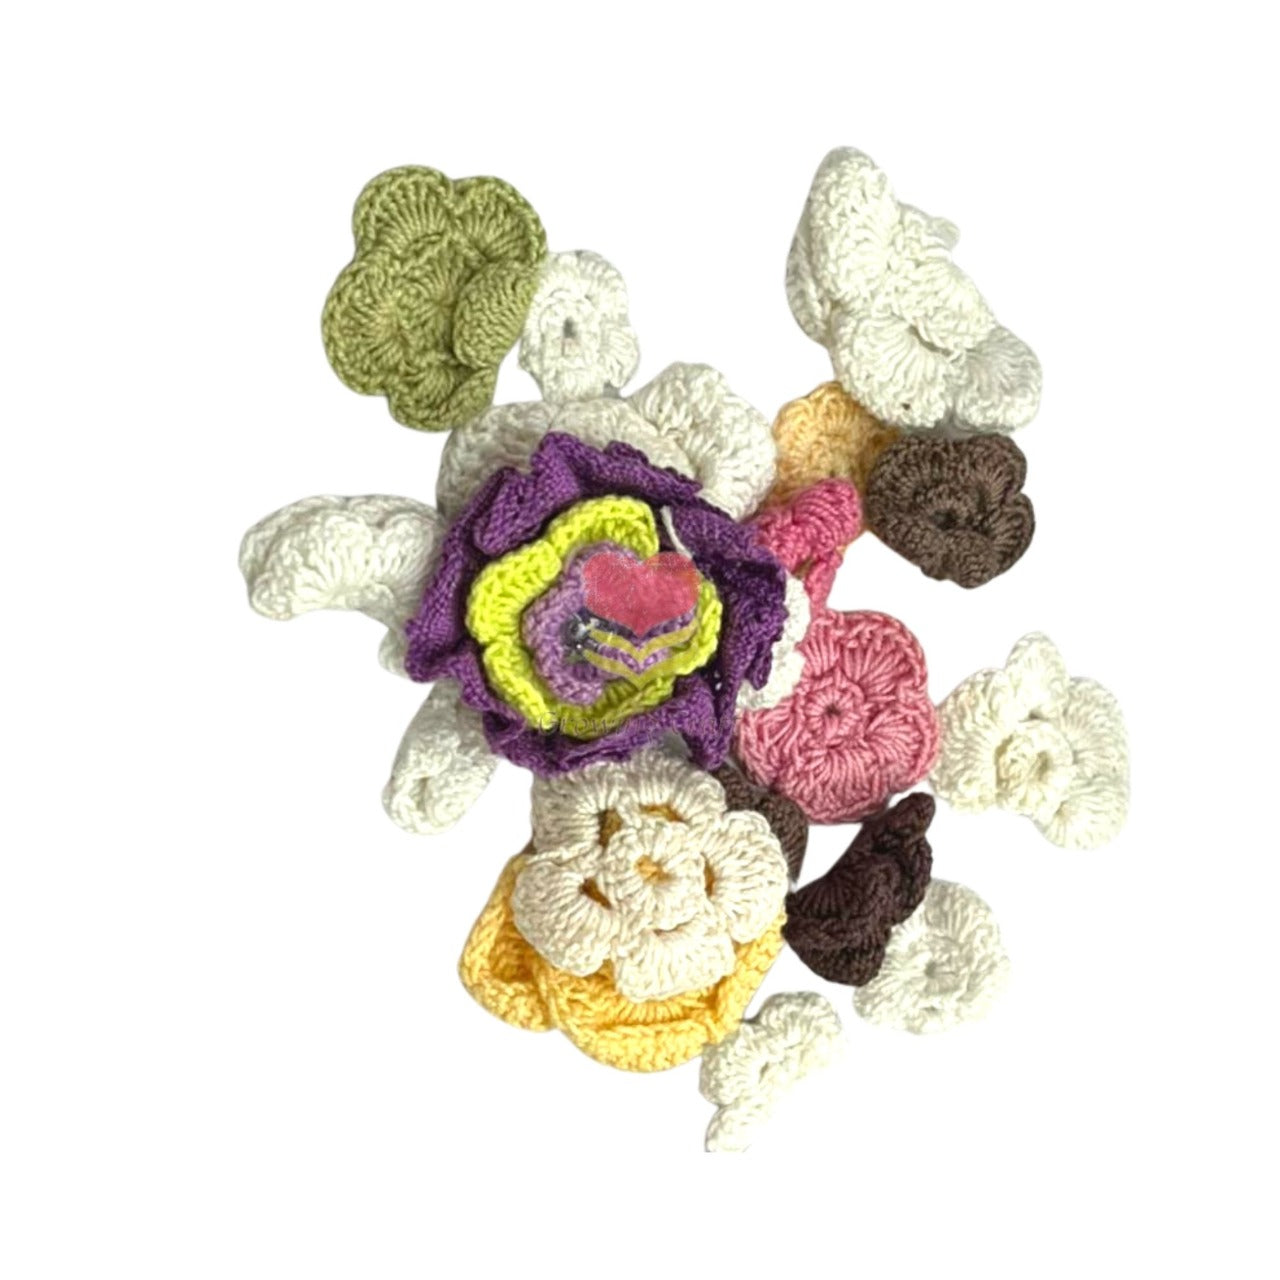 Crochet flowers Mix Pack - Growing Craft - Best craft Supplies